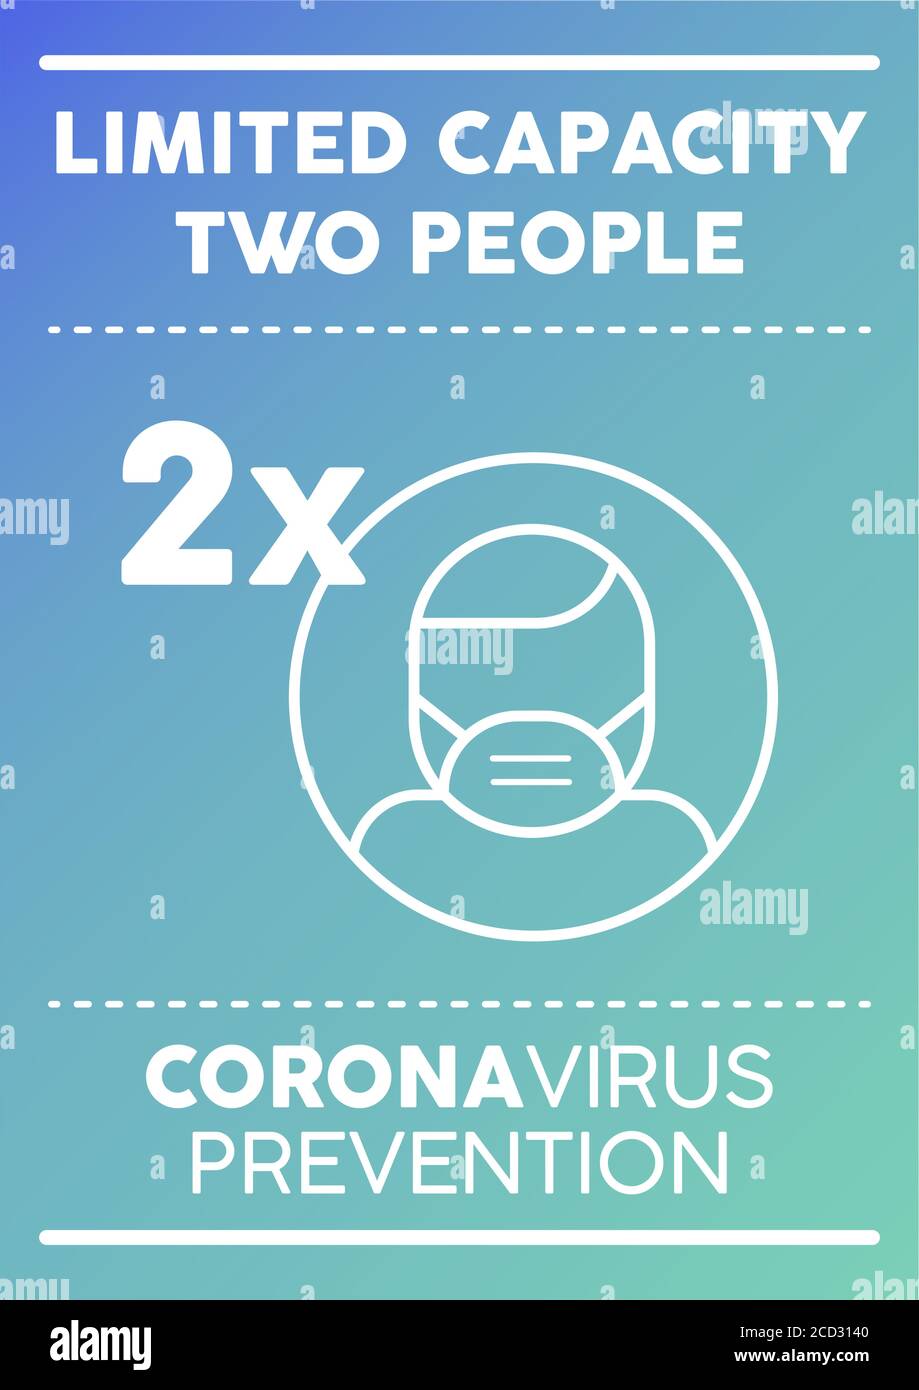 Affiche de capacité limitée pour deux personnes. Prévention du coronavirus. Illustration de Vecteur